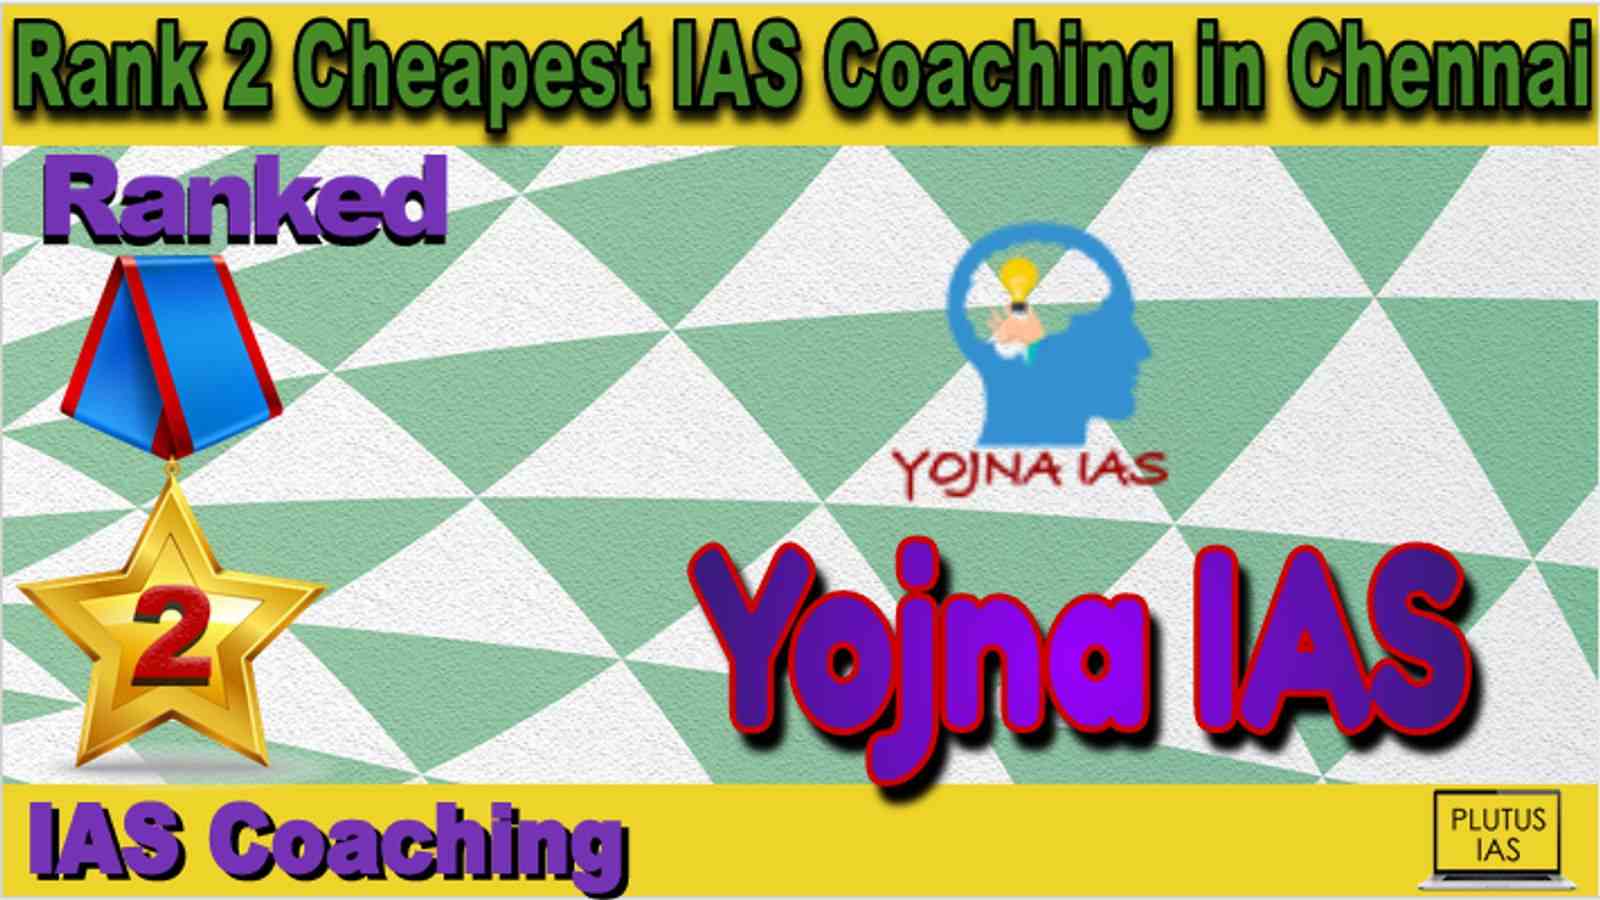 Rank 2 Cheapest IAS Coaching in Chennai